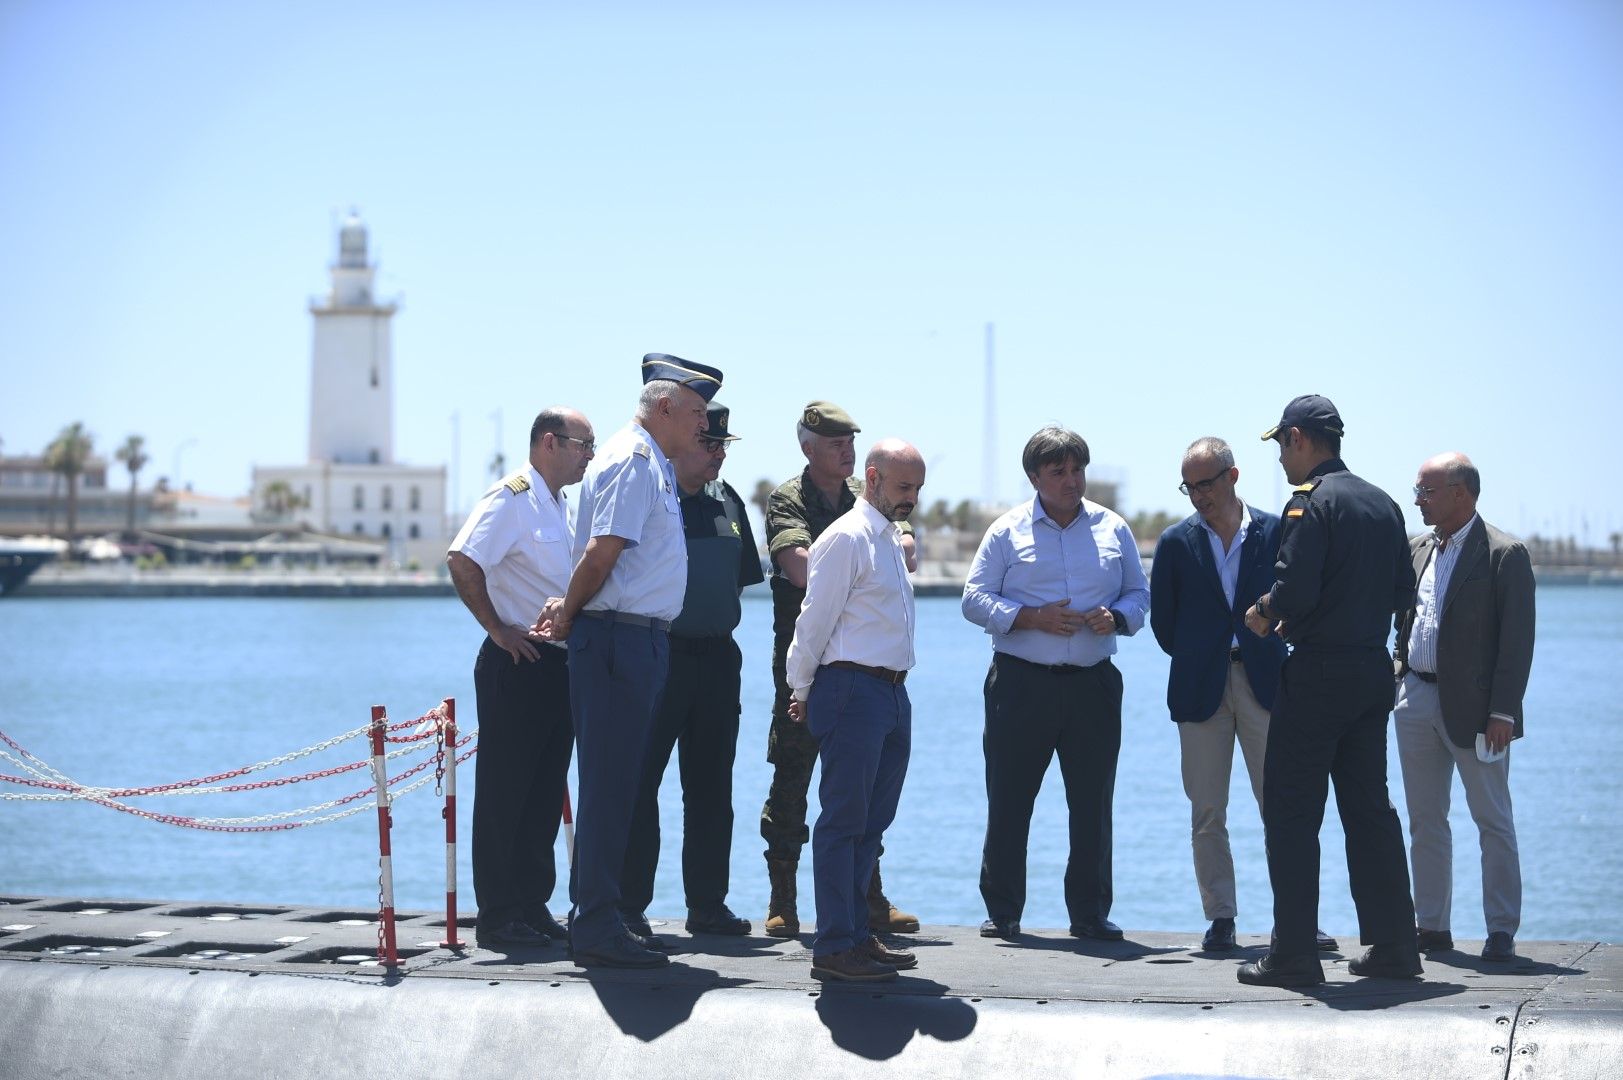 El submarino S-74 Tramontana atraca en el Puerto de Málaga